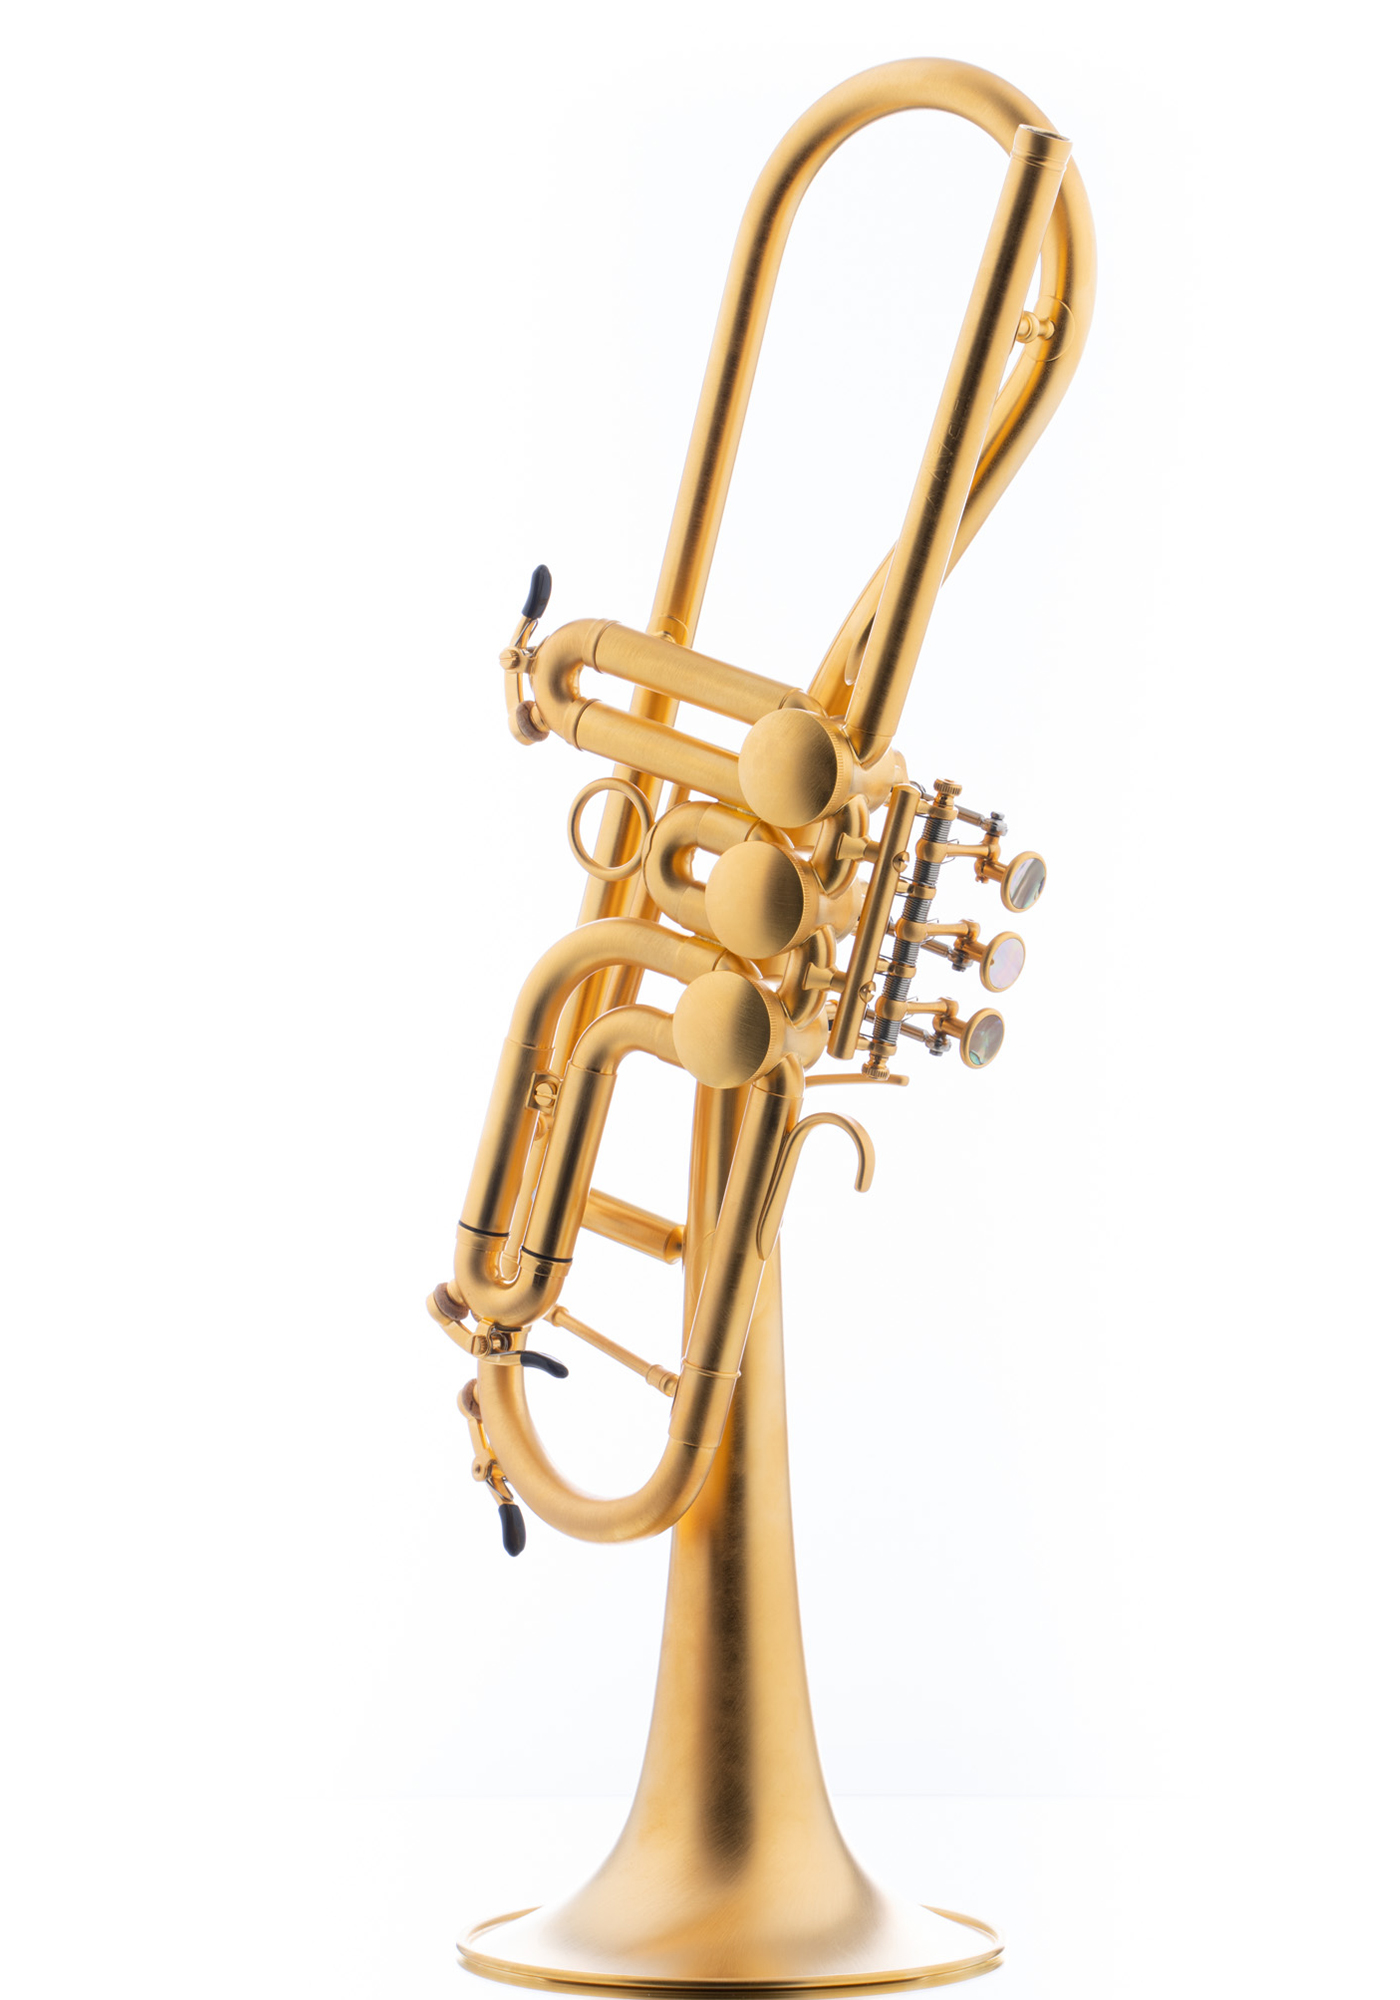 Schagerl Bb-Trumpet "GANSCHHORN" heavyscratched gold